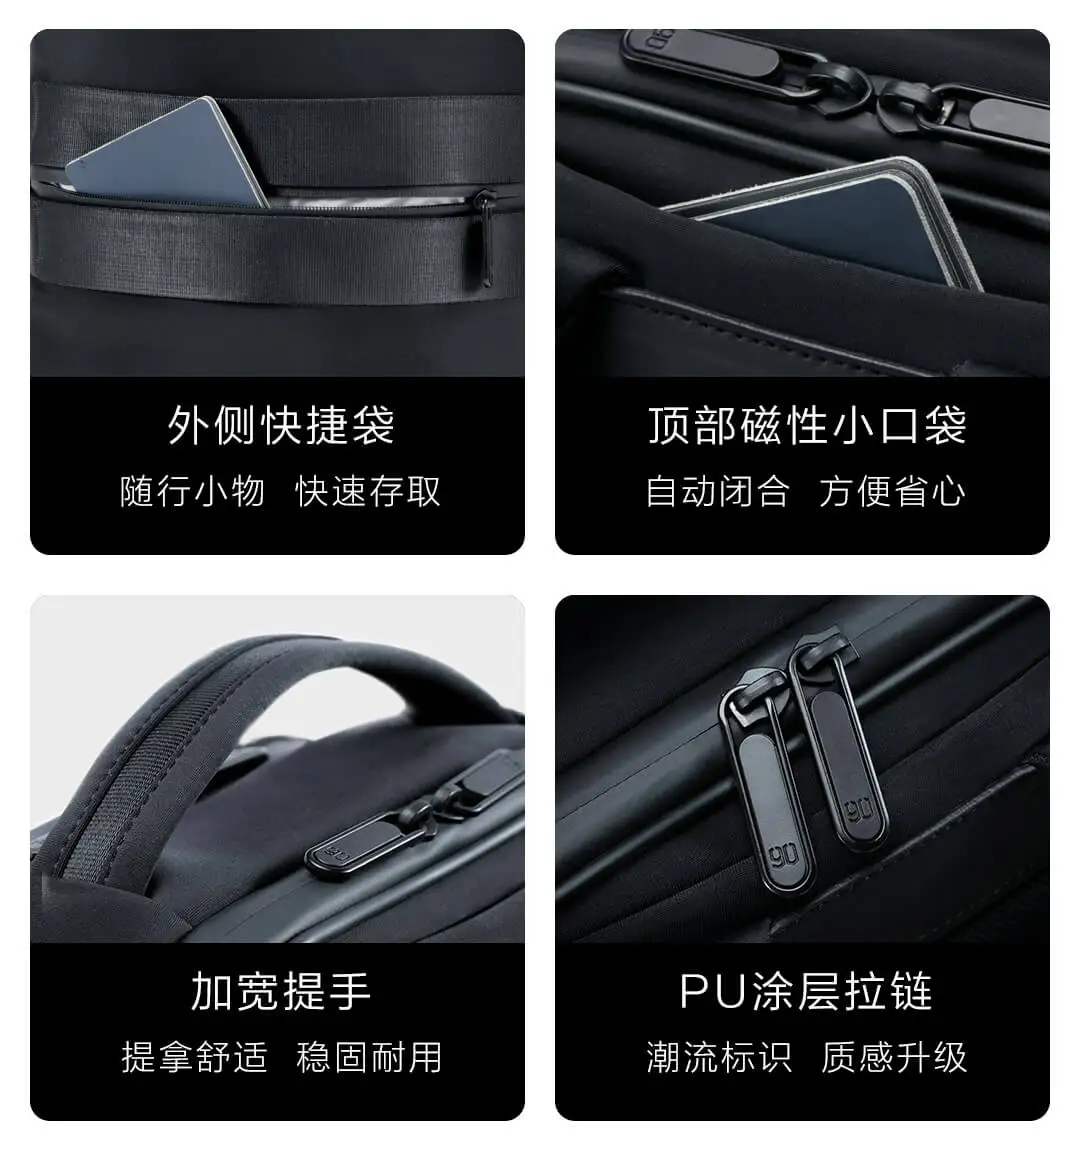 Xiaomi 90fun Манхэттен бизнес досуг рюкзак s-образный утолщенный плечевой ремень стереоскопический воздухопроницаемая задняя пластина